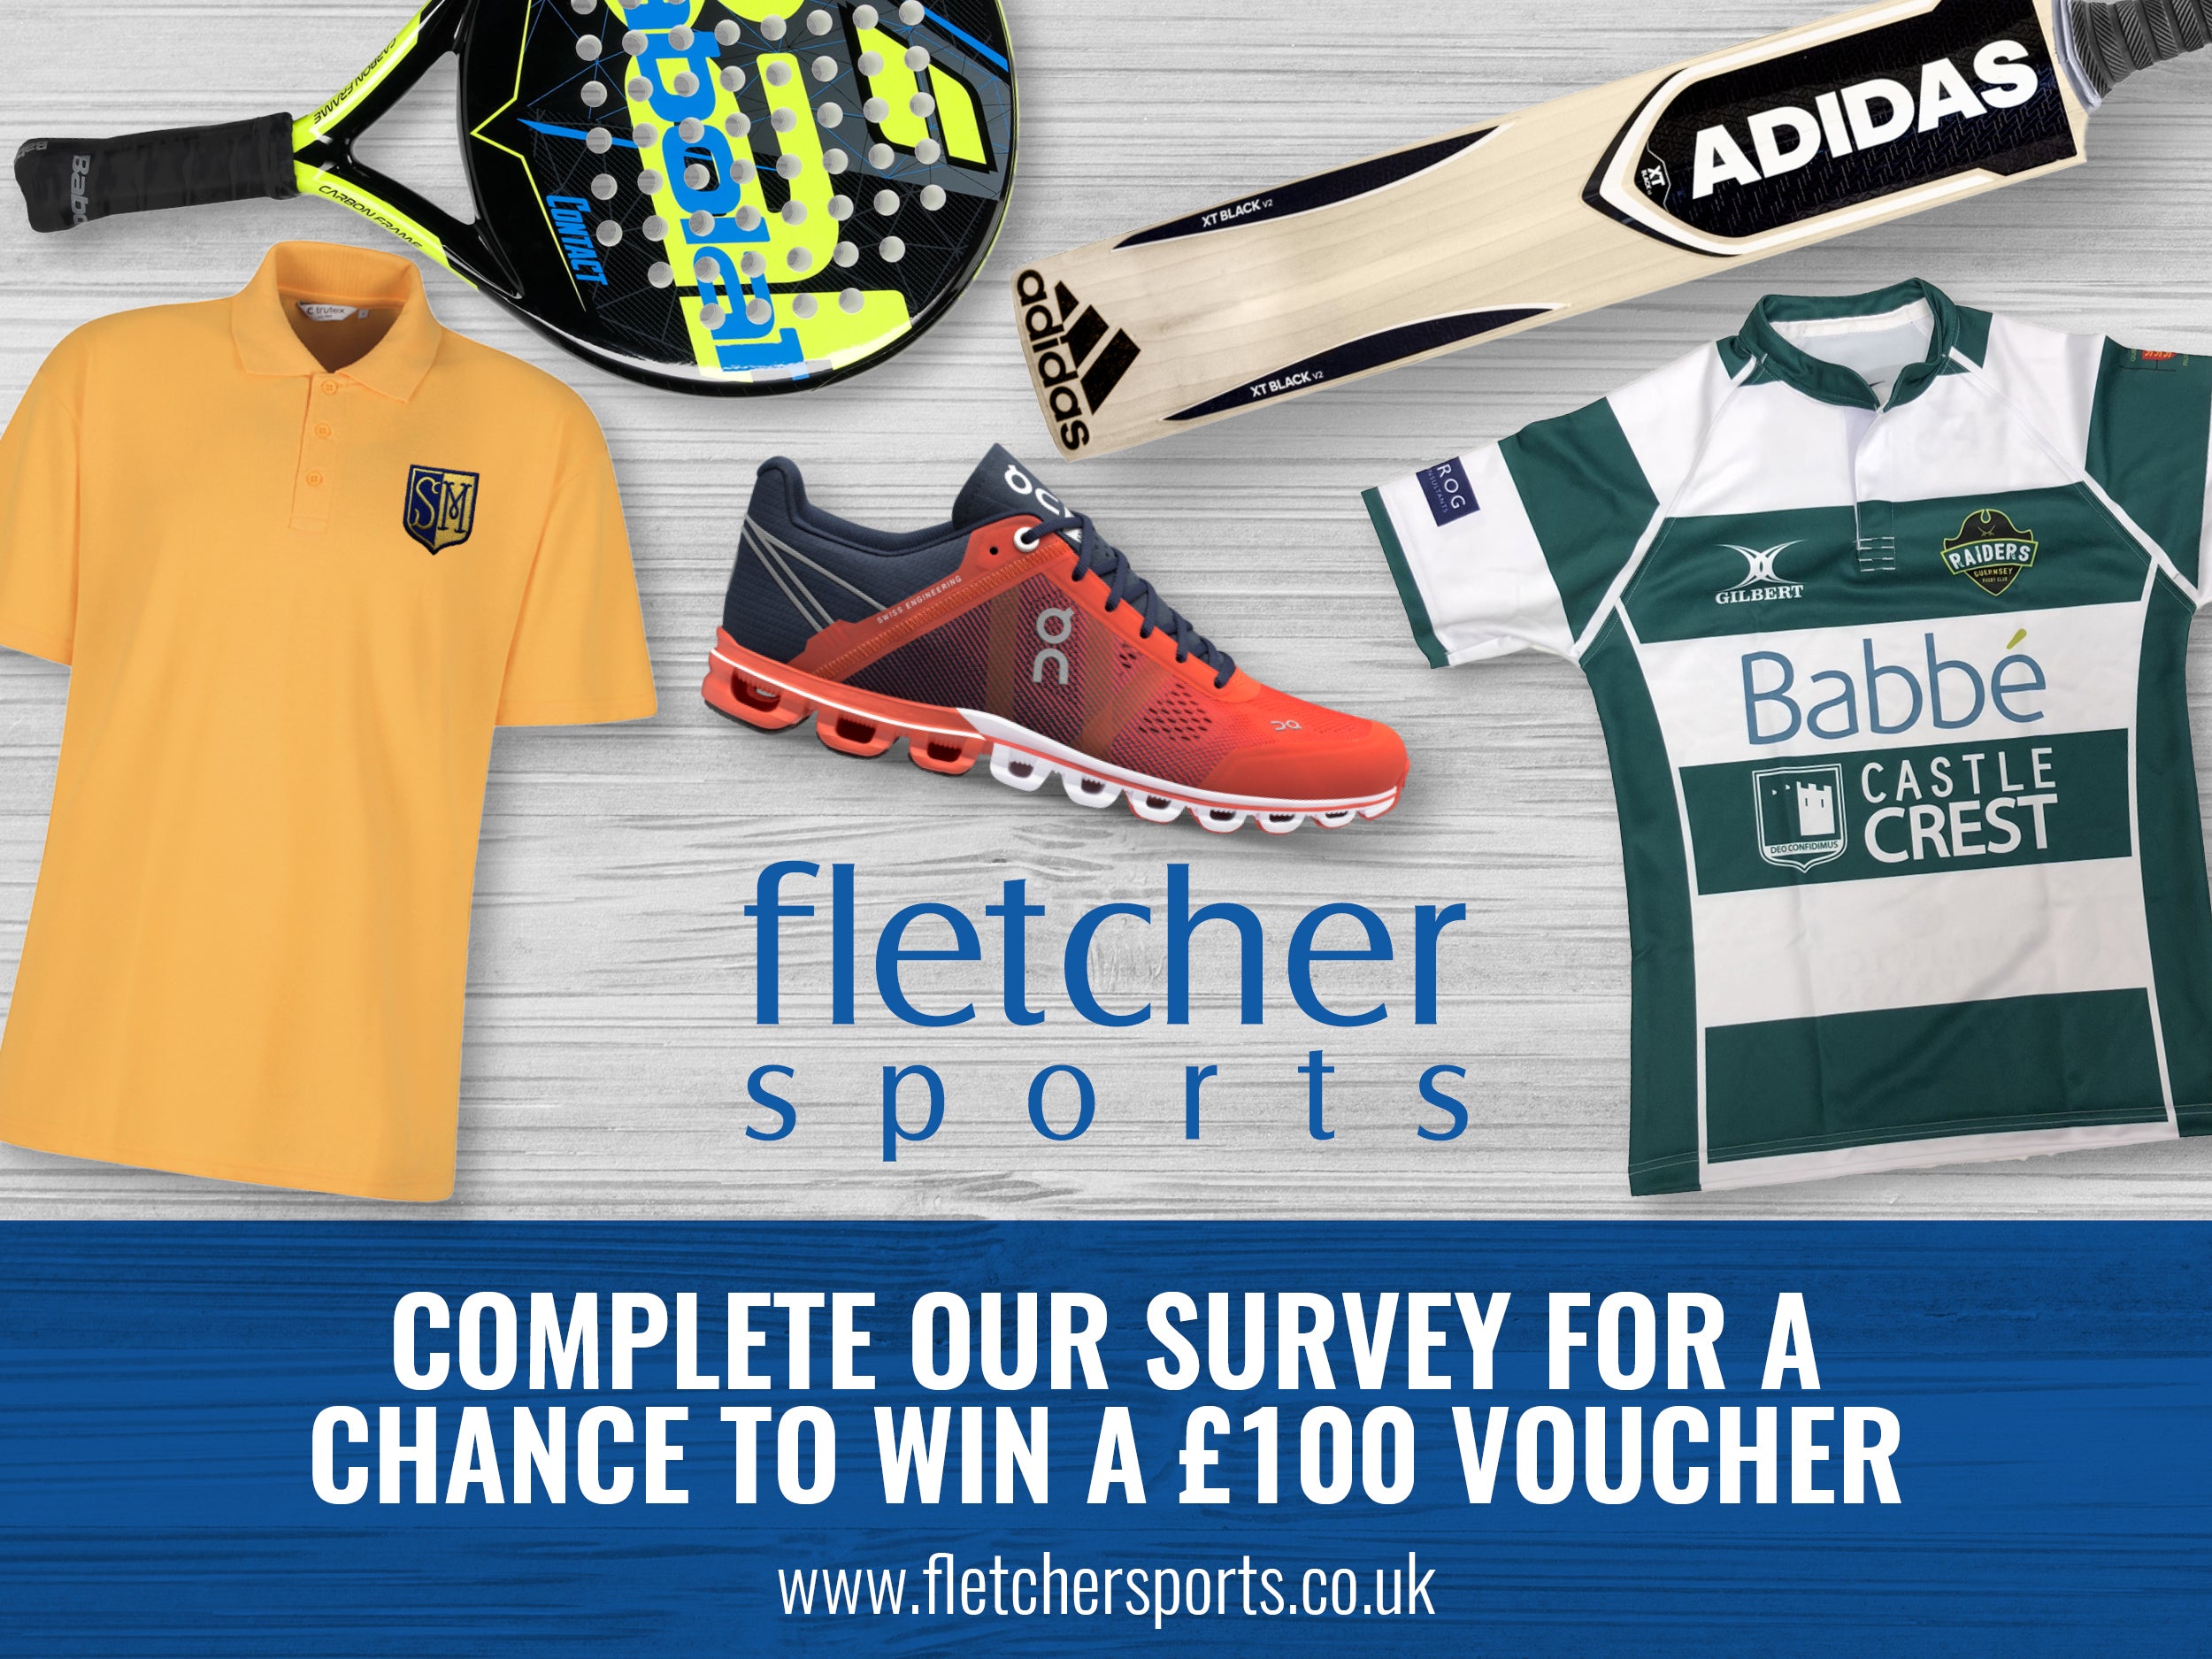 Win a £100 voucher for Fletcher Sports